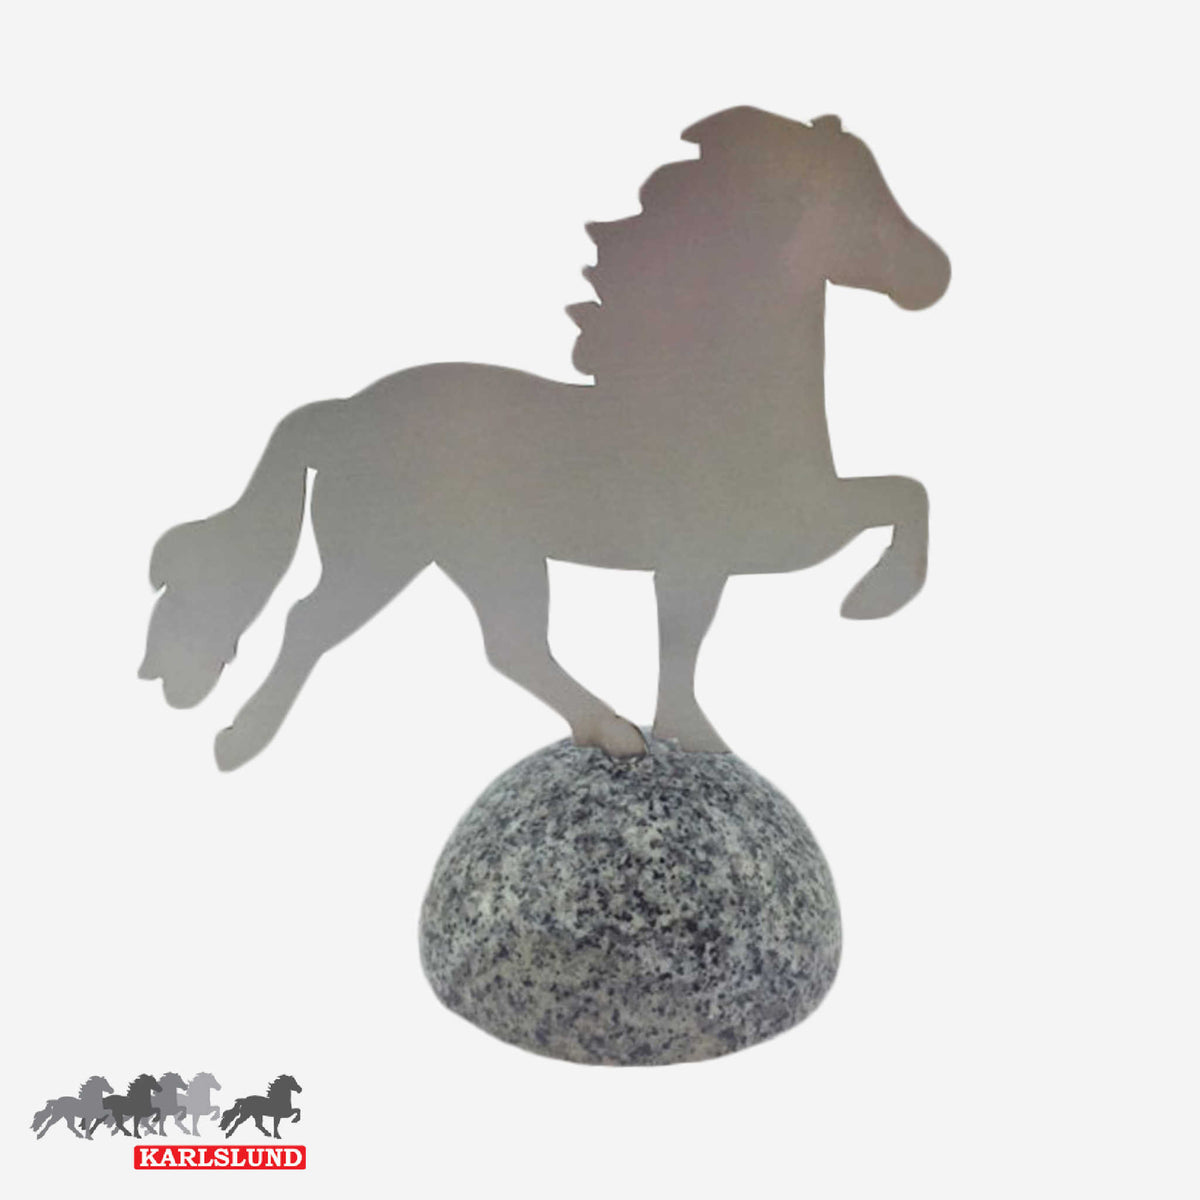 Statyett med dekorativ häst i rostfri stål på polerat granitblock